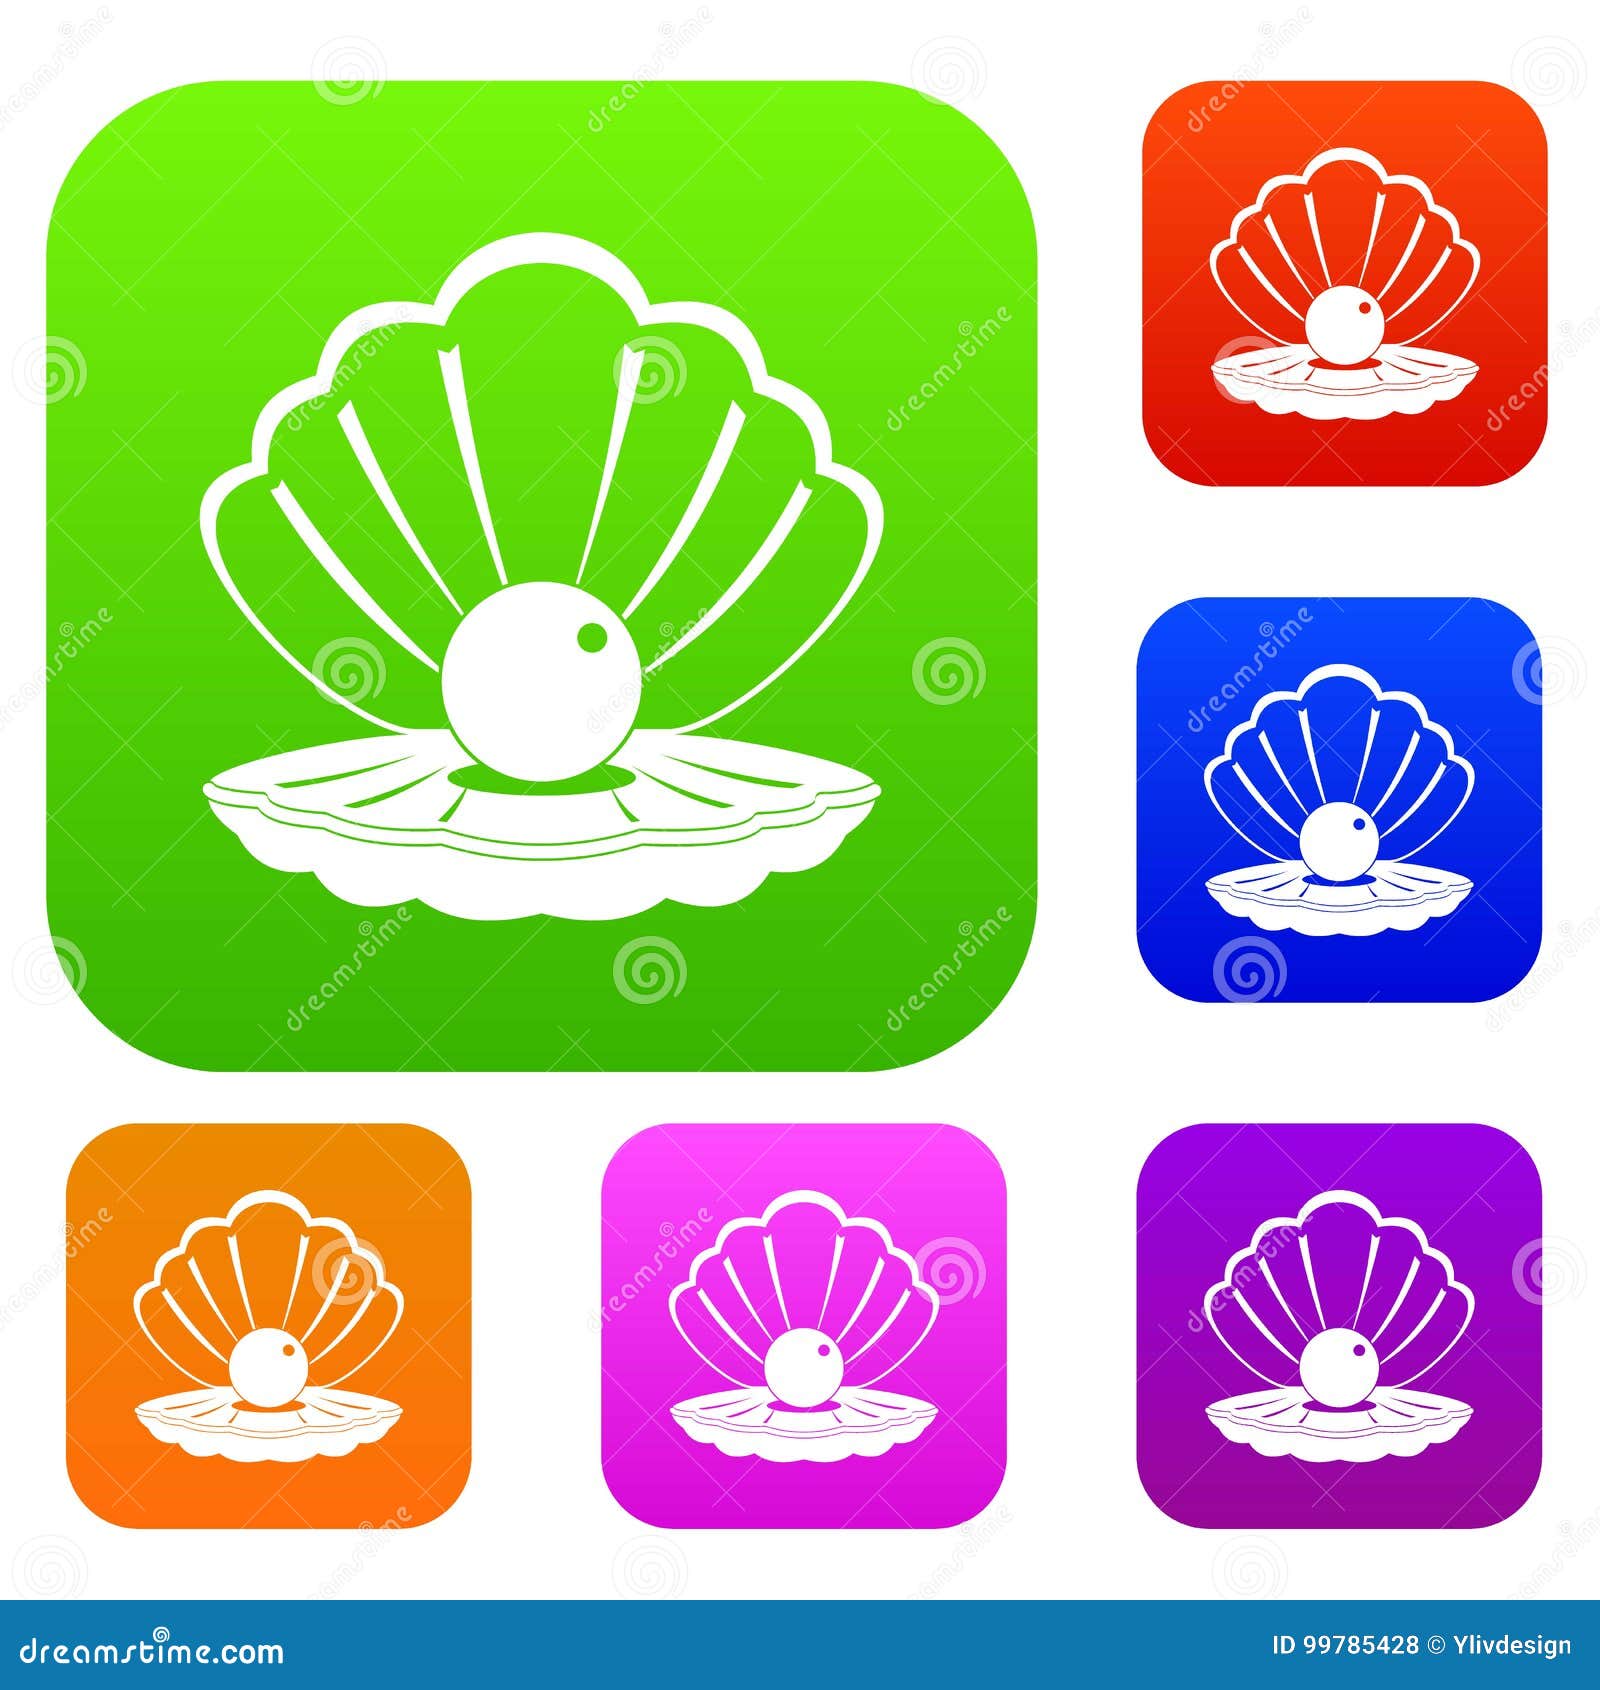 Shell set. Логотип Жемчужинка. Ракушка и Жемчужина лого компаний. Sea Shell icon. Ракушка и Жемчужина лого компаний вектор.